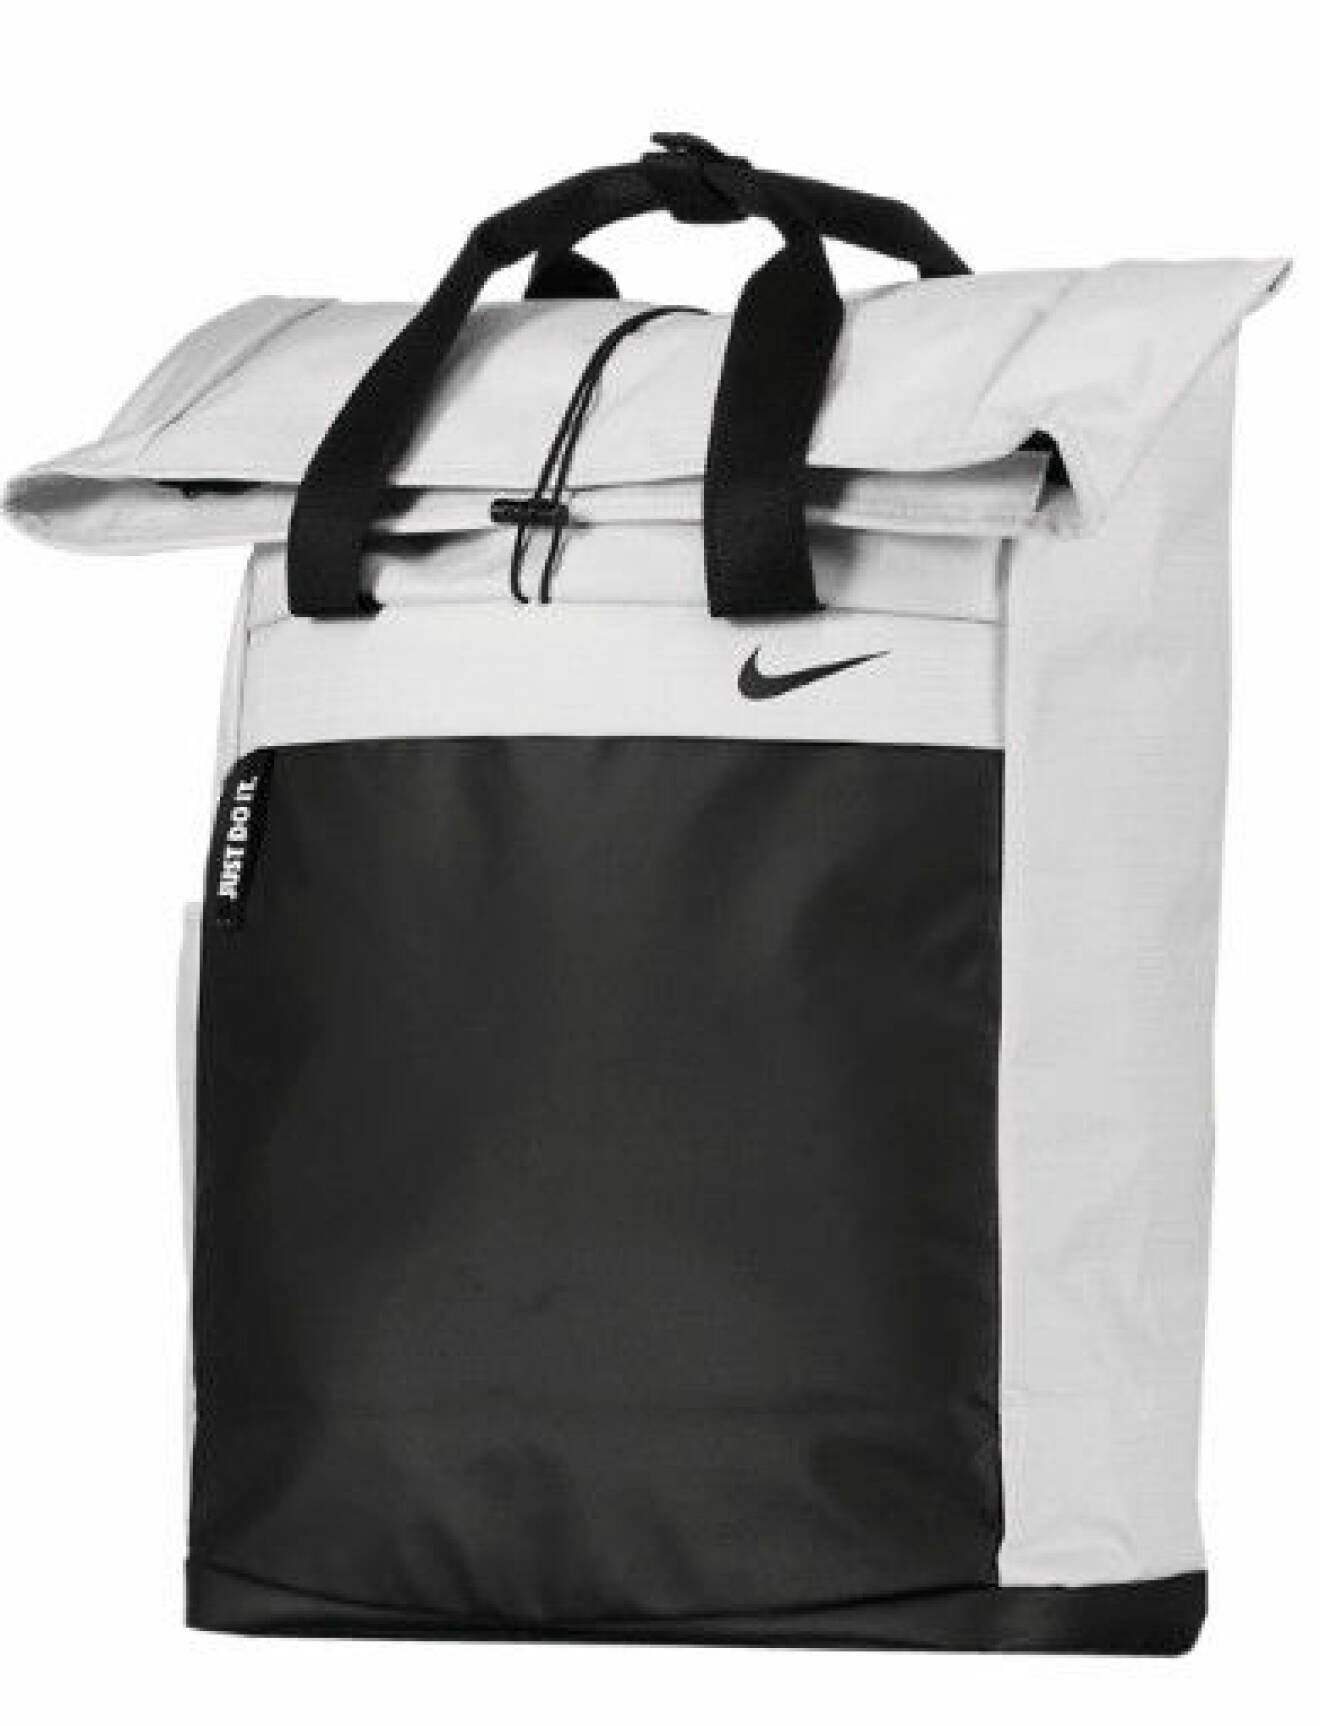 Ryggsäck från Nike